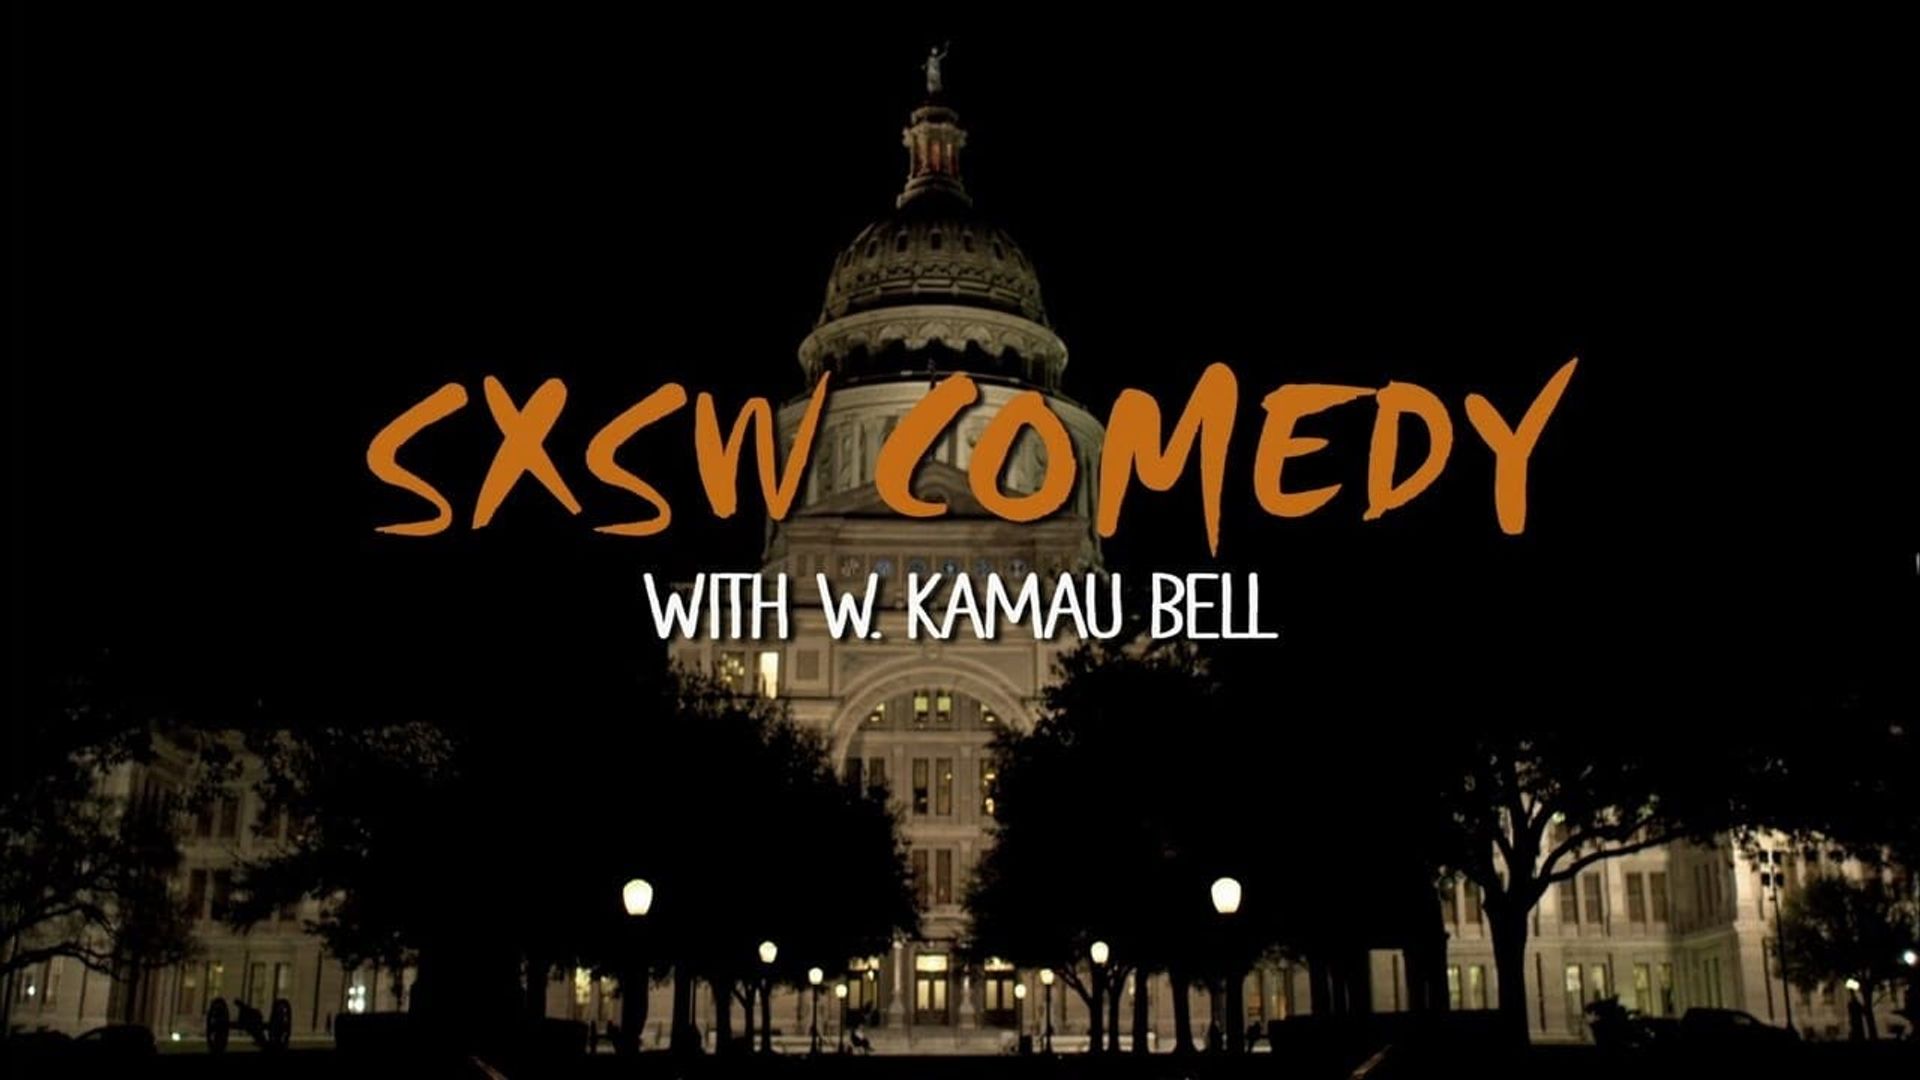 SXSW Comedy with W. Kamau Bell: Part 2 background